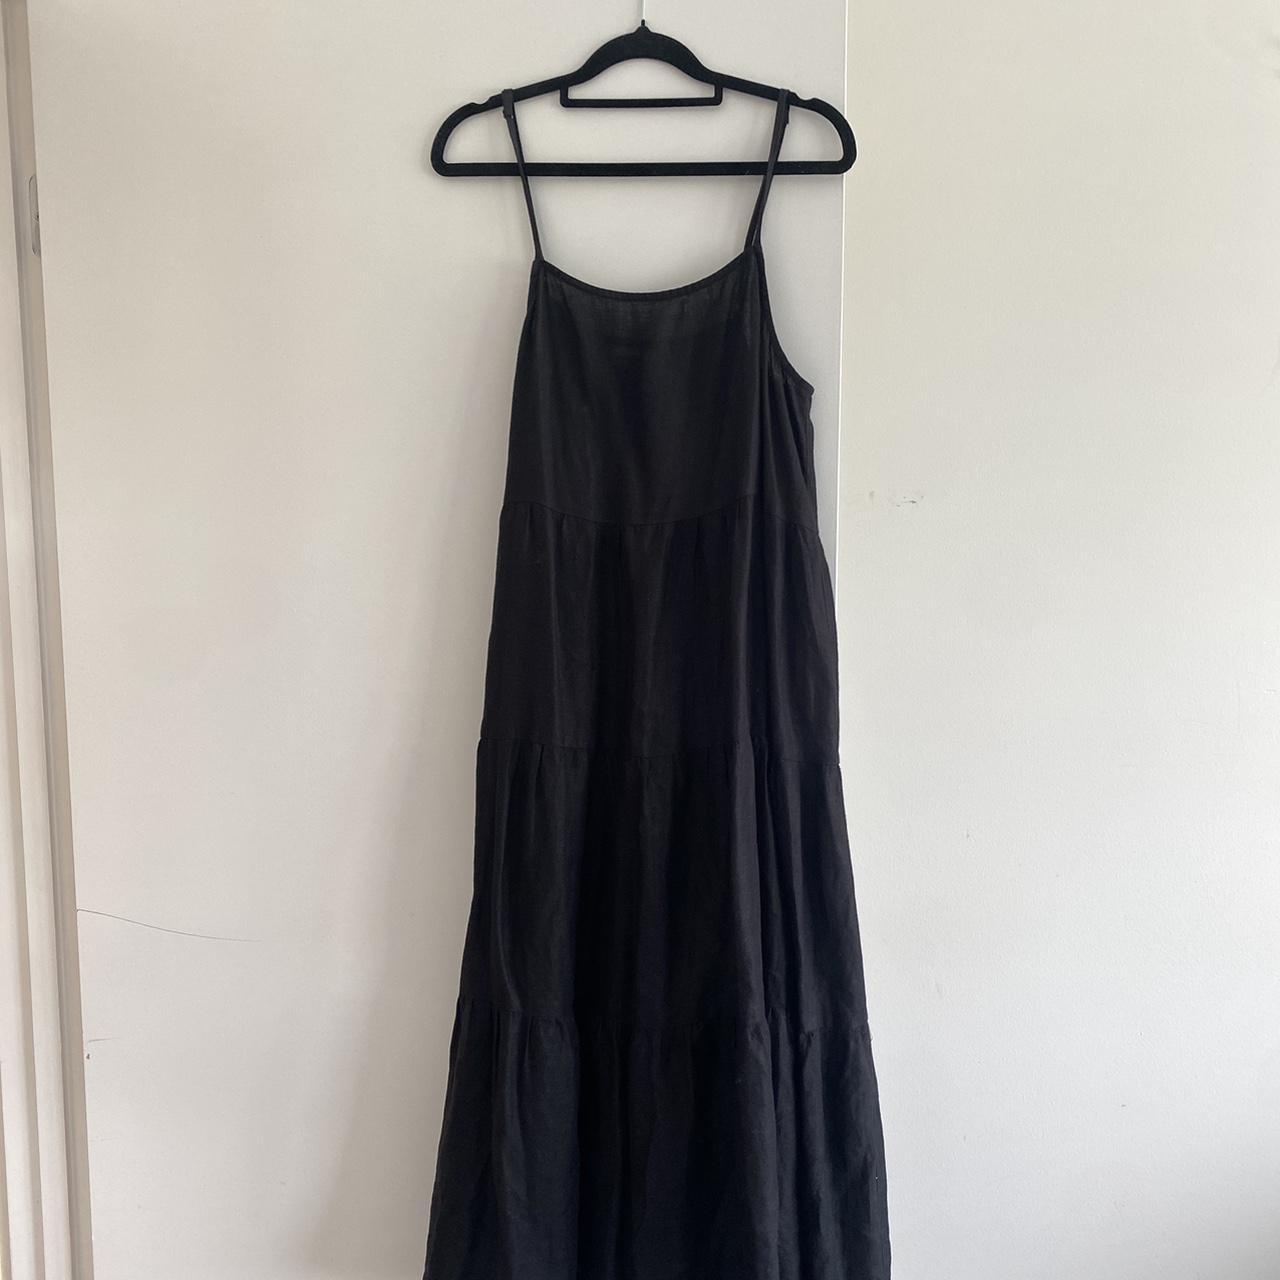 Seed Heritage Black Midi Dress Size 10 - 14... - Depop